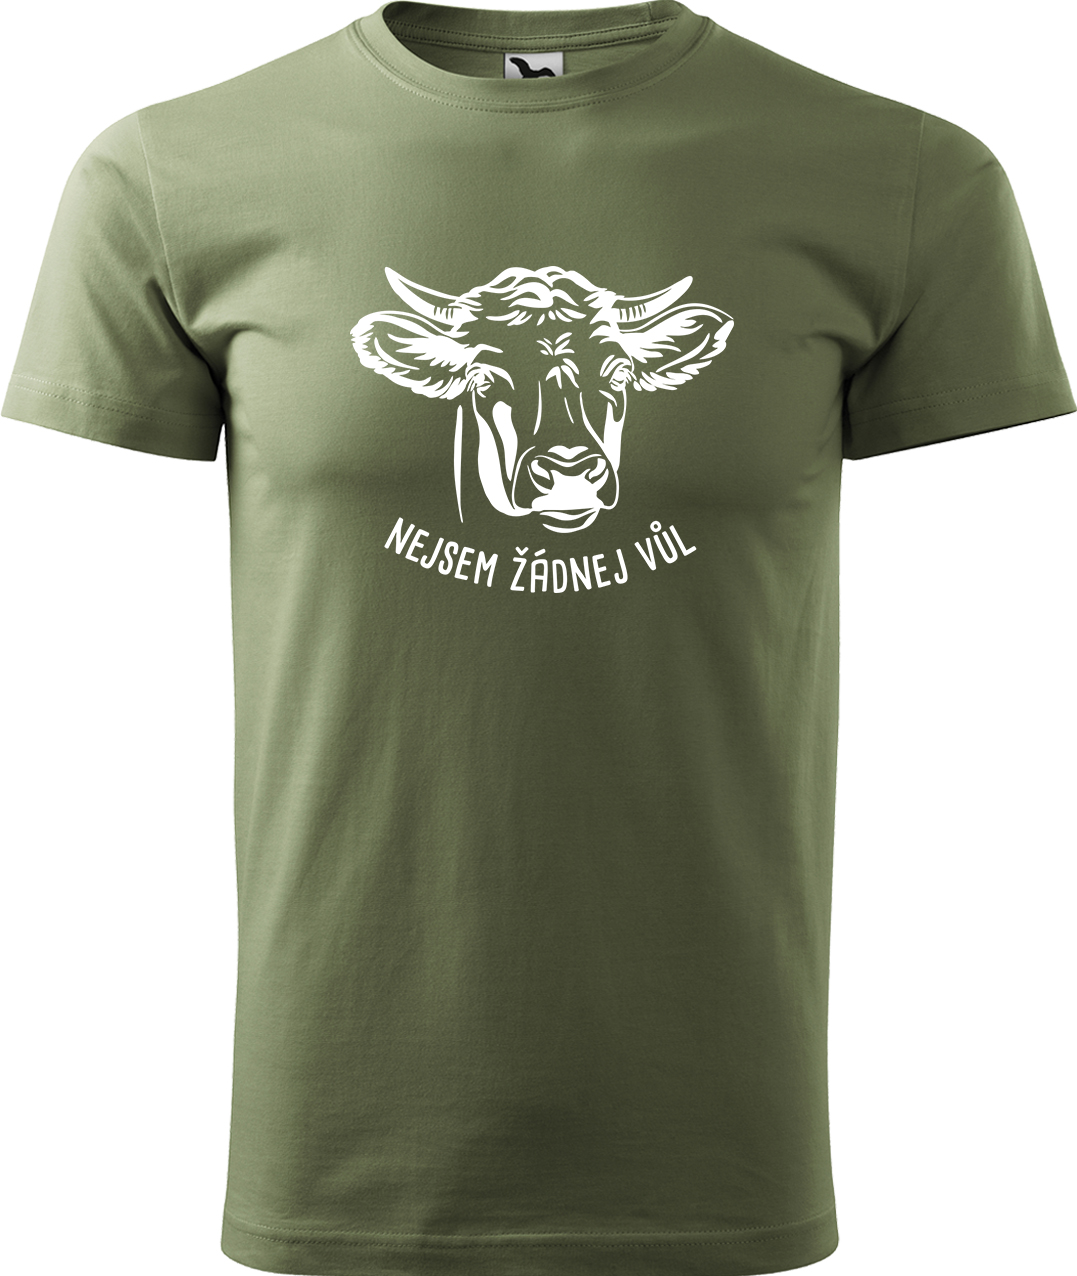 Pánské tričko s krávou - Nejsem žádnej vůl Velikost: XL, Barva: Světlá khaki (28), Střih: pánský